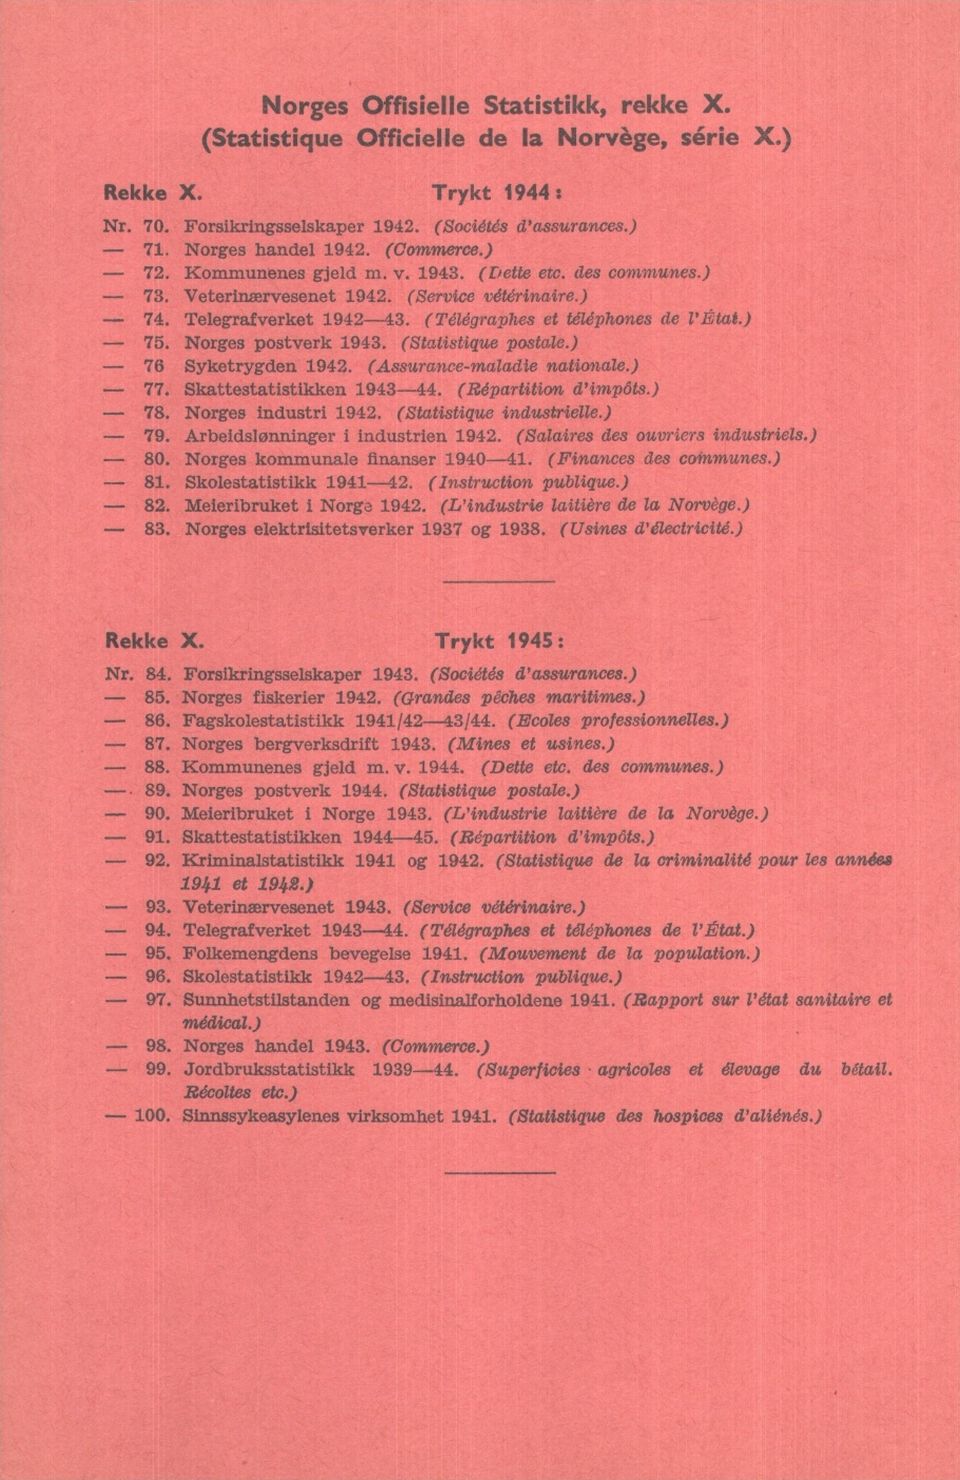 Norges postverk 1943. (Statistique postale.) 76 Syketrygden 1942. (Assurance-maladie nationale.) 77. Skattestatistikken 1943-44. (Répartition d'impôts.) 78. Norges industri 1942.